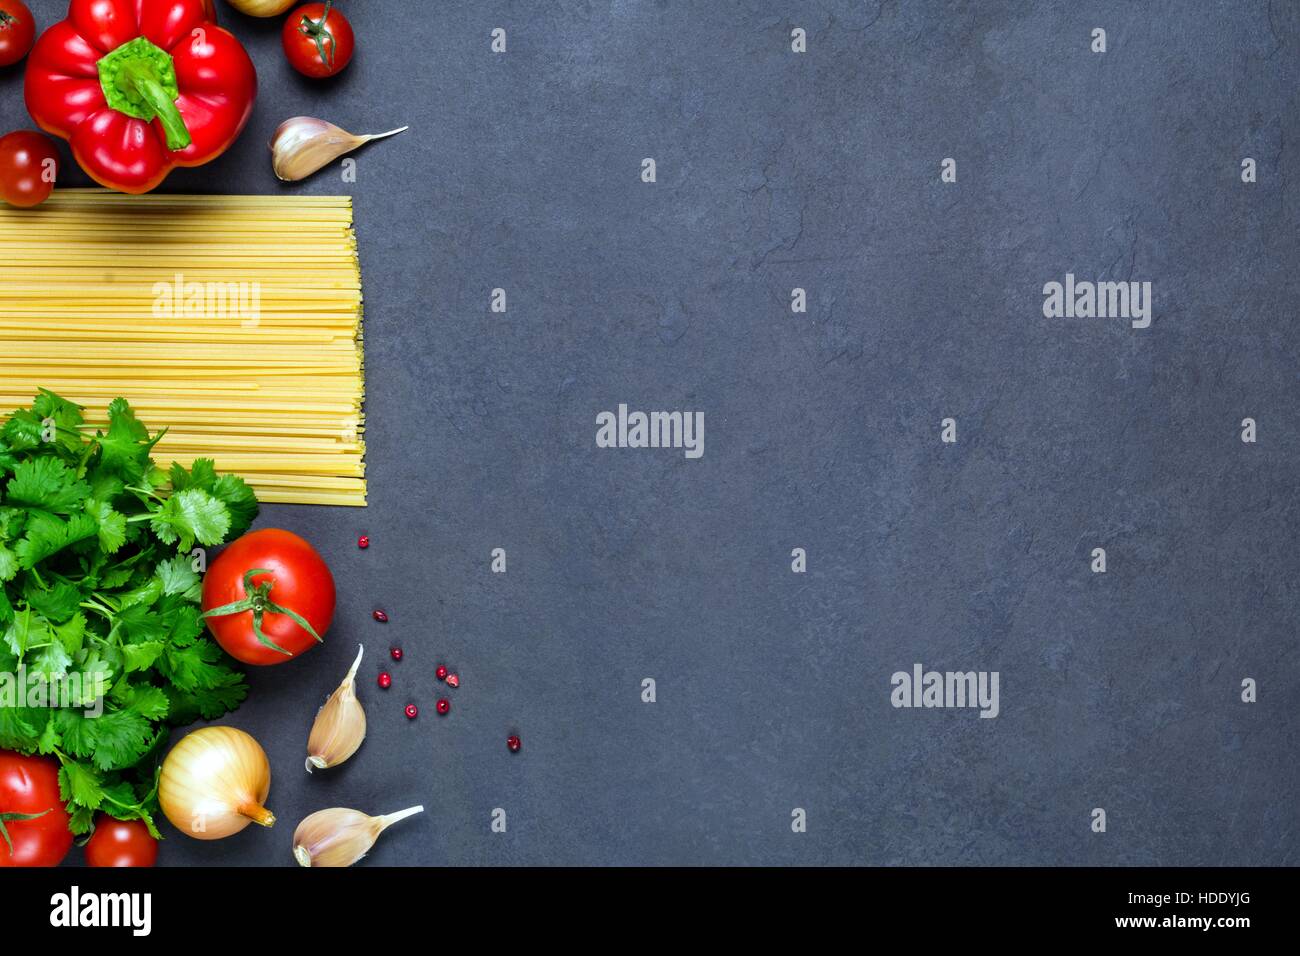 Pasta, spezie e verdure su sfondo di ardesia - cottura Ingredienti per la cucina italiana. Copia spazio per il testo. Vista superiore Foto Stock